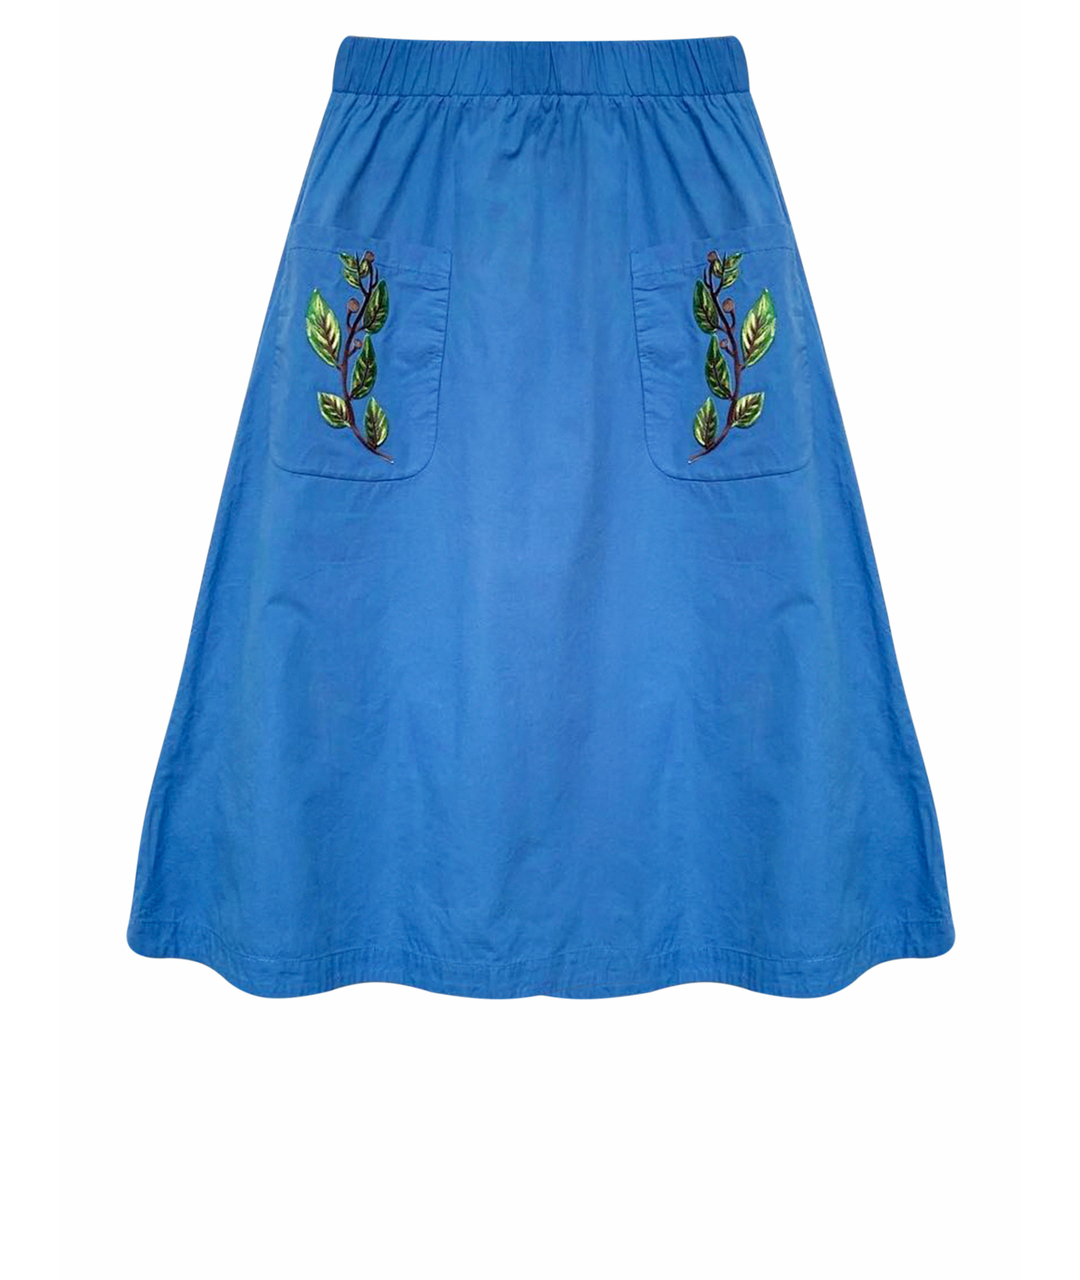 ALENA AKHMADULLINA Синяя хлопковая юбка макси, фото 1